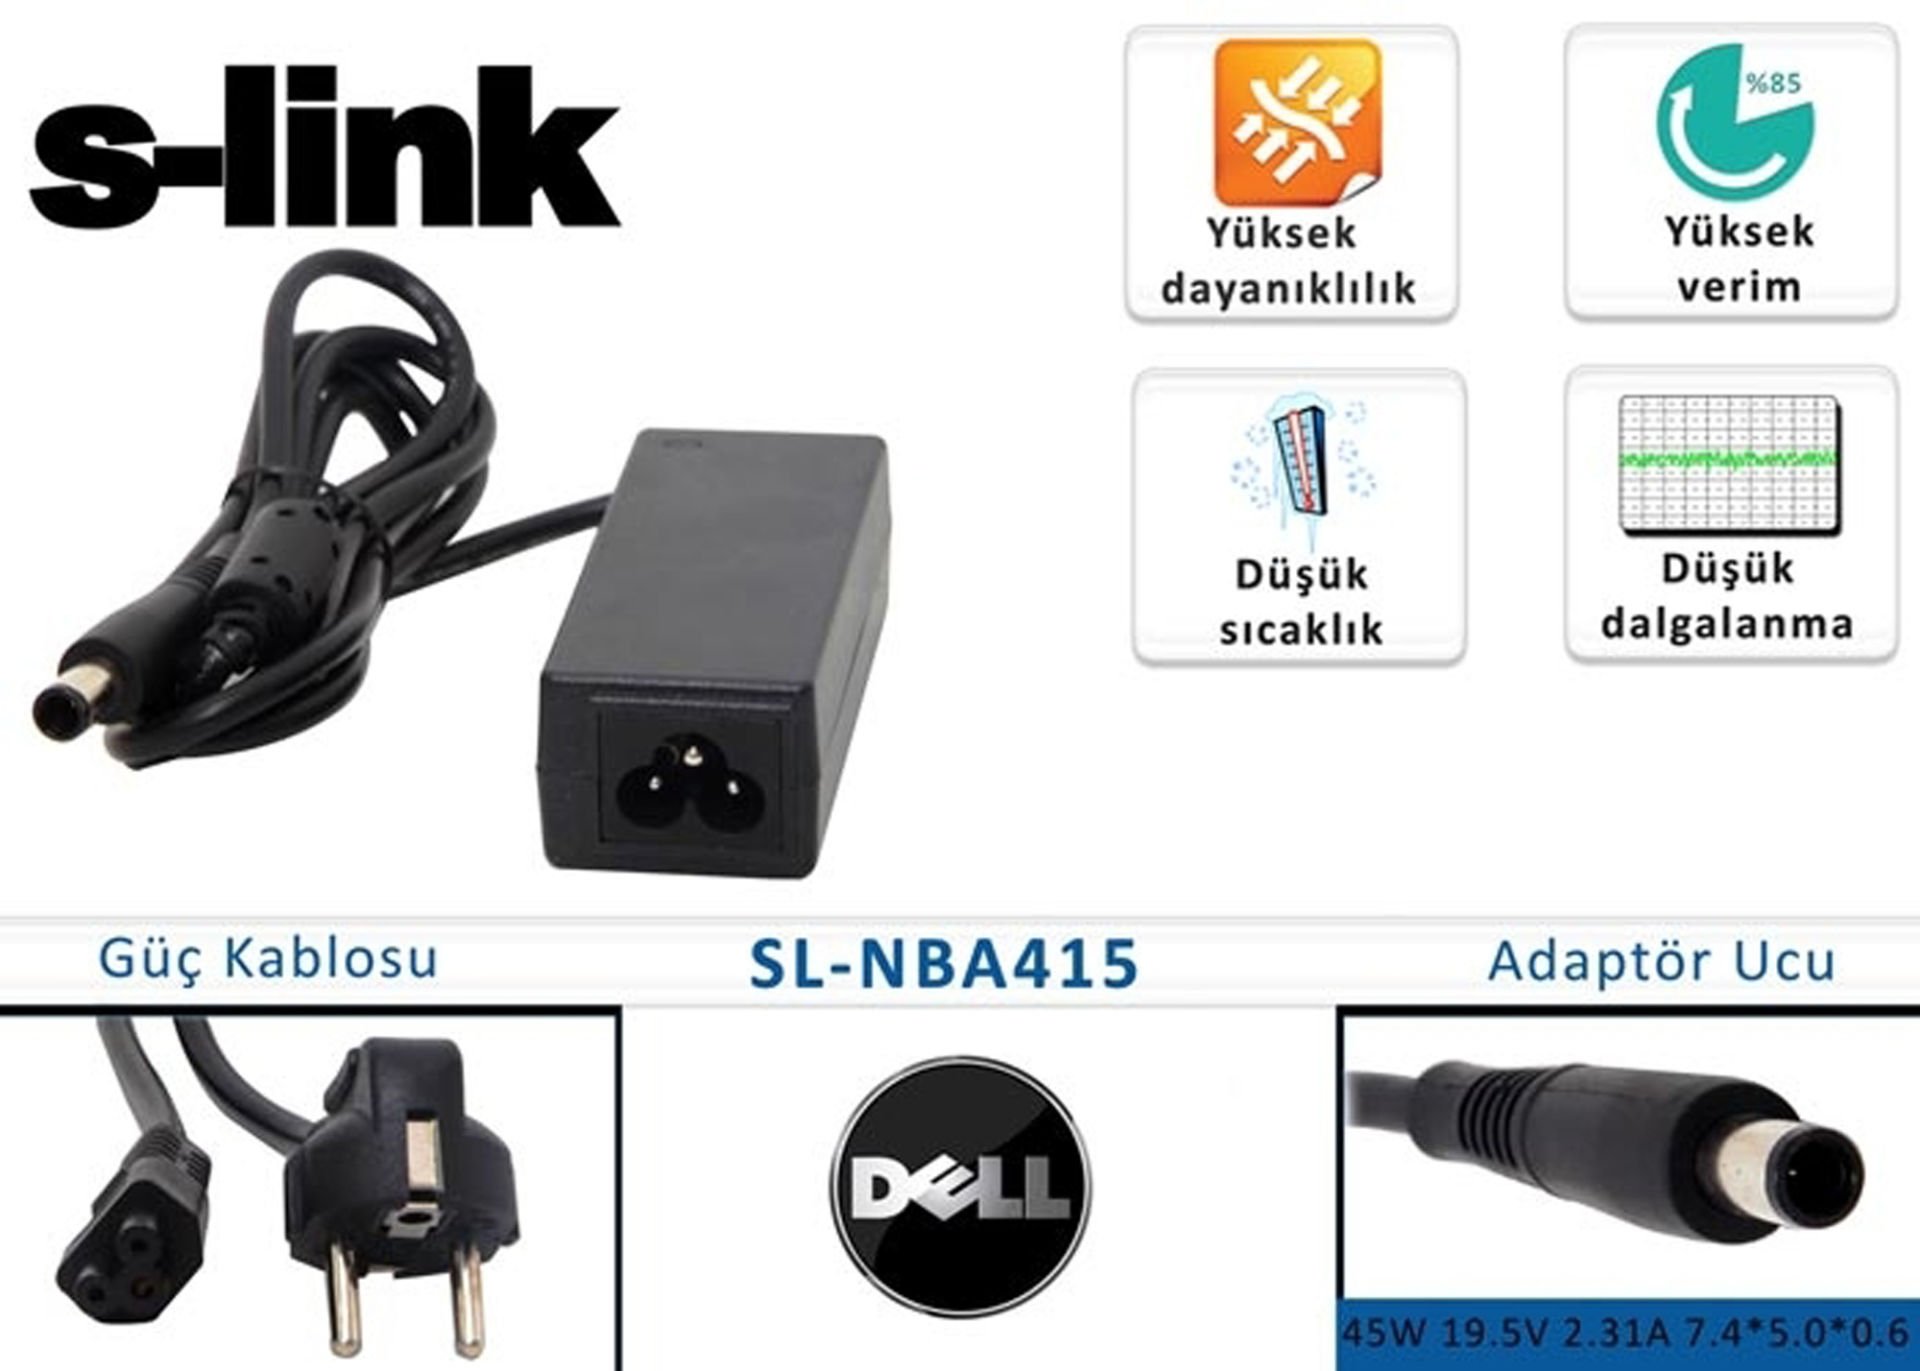 S-link Dell Notebook Adaptörü SL-NBA 415 45w 19.5v 2.31a 7.4*5.0*0.6